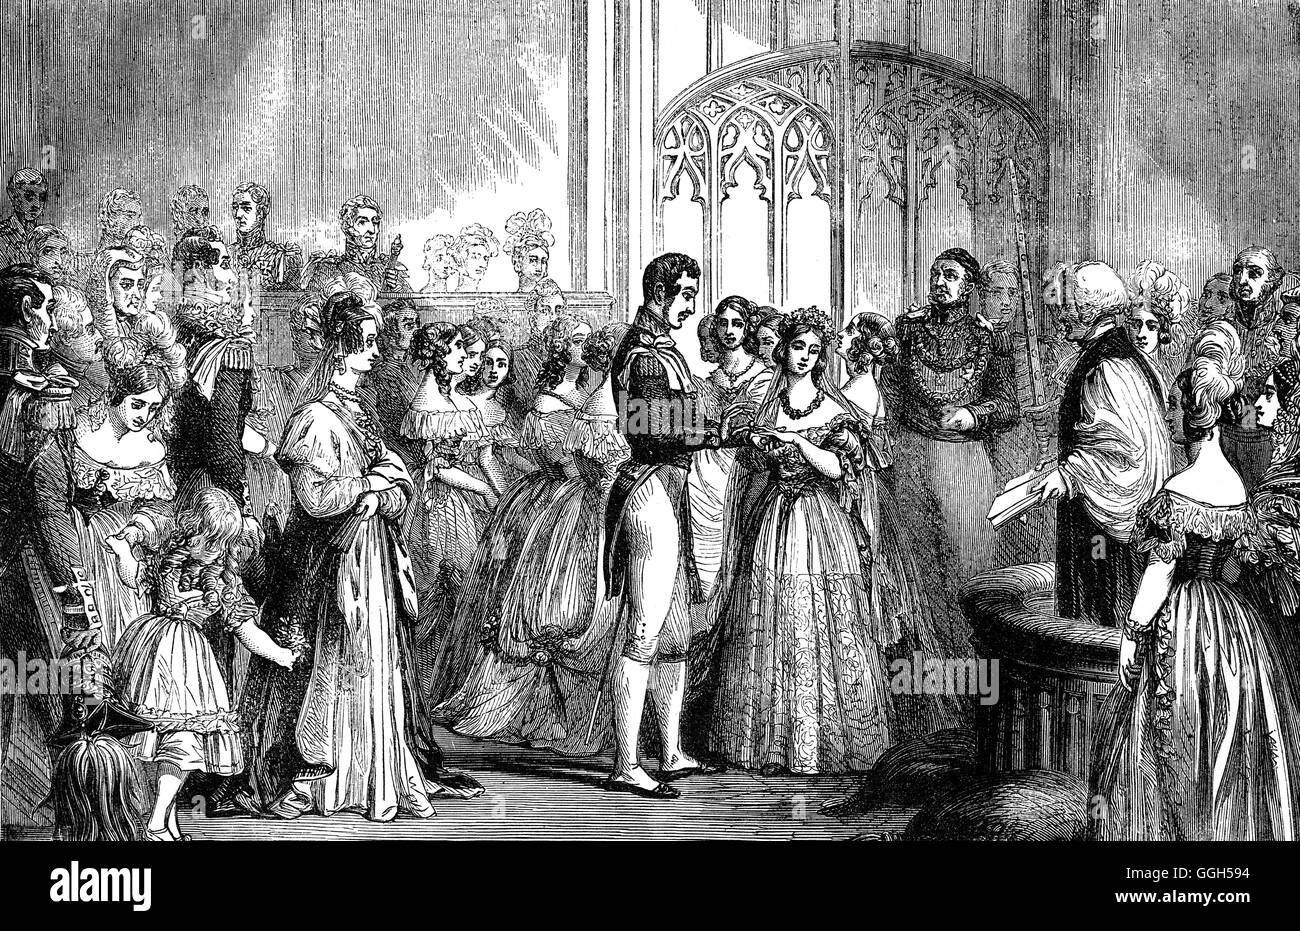 Die Hochzeit von Königin Victoria und Prinz Albert, am 10. Februar 1840, die Hochzeit im Februar, der ersten Ehe eine amtierende englische Königin seit Bloody Mary fast 300 Jahre zuvor, fand in der Chapel Royal an Str. Jamess Palast, London, England Stockfoto